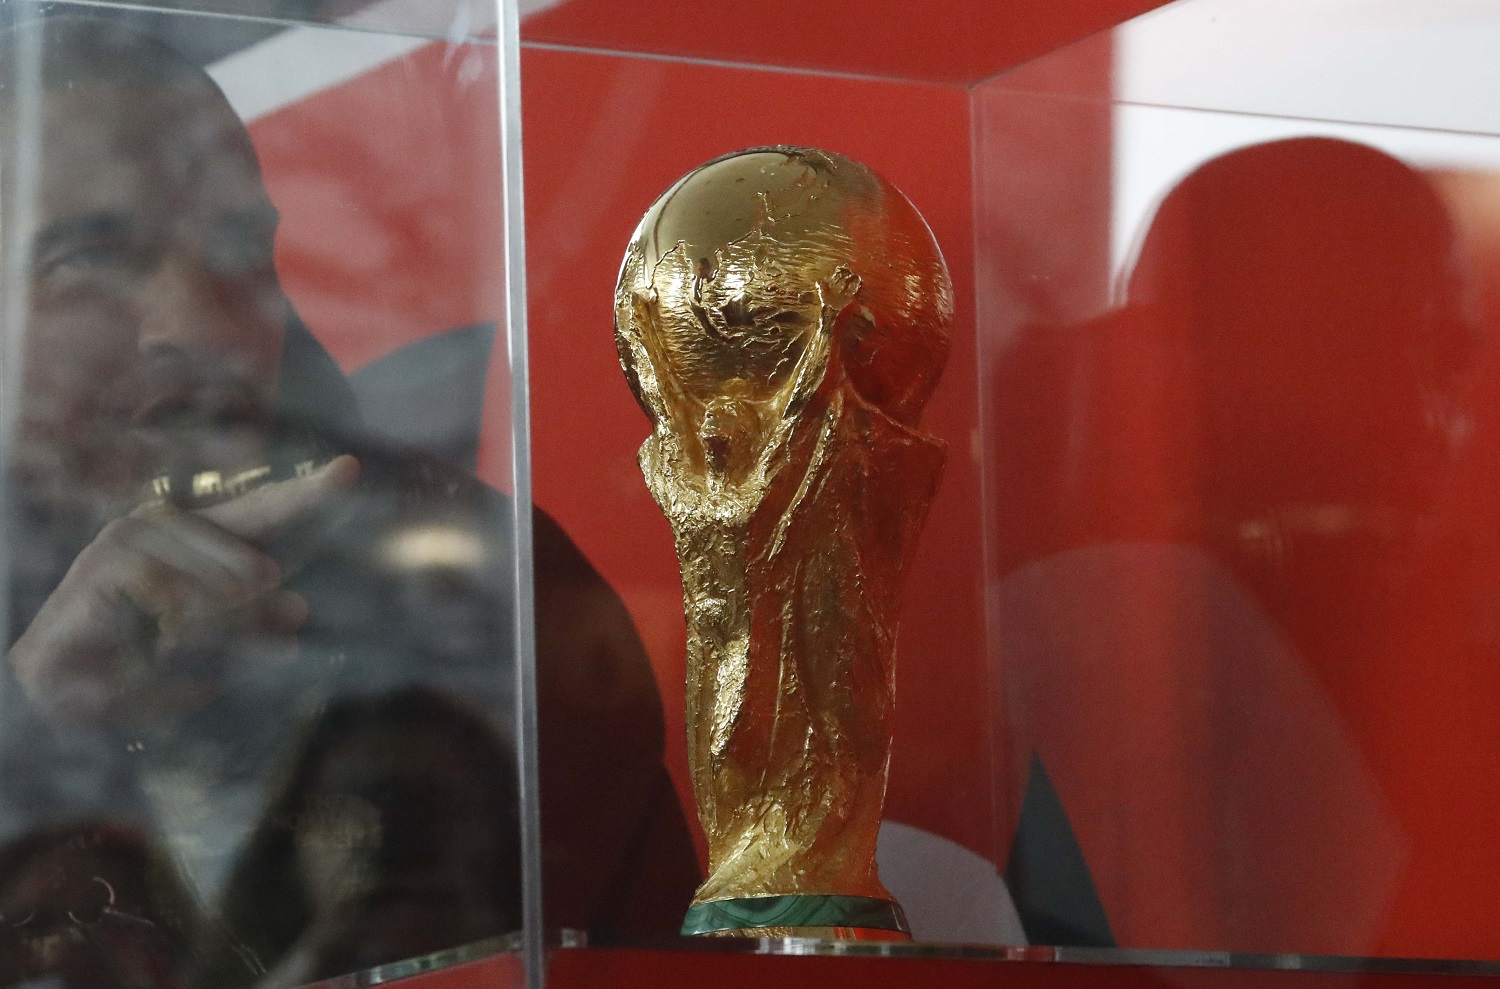 El trofeo de la copa del mundo llega al Palacio del Kremlin (Fotos)